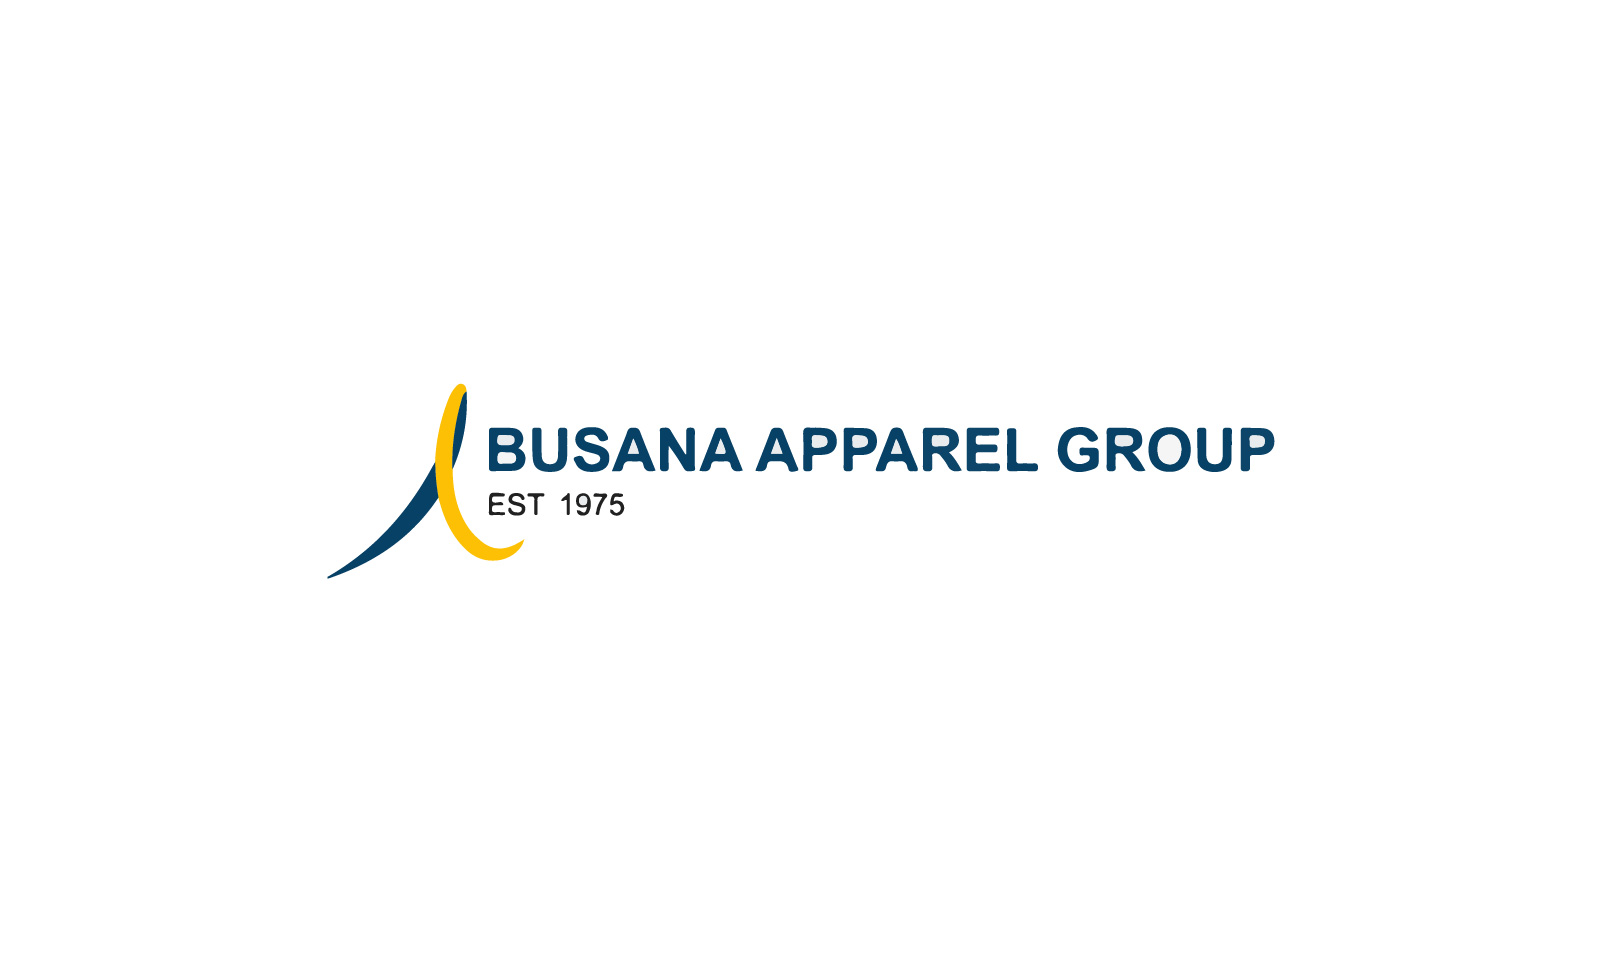 Busana Apparel Group 02